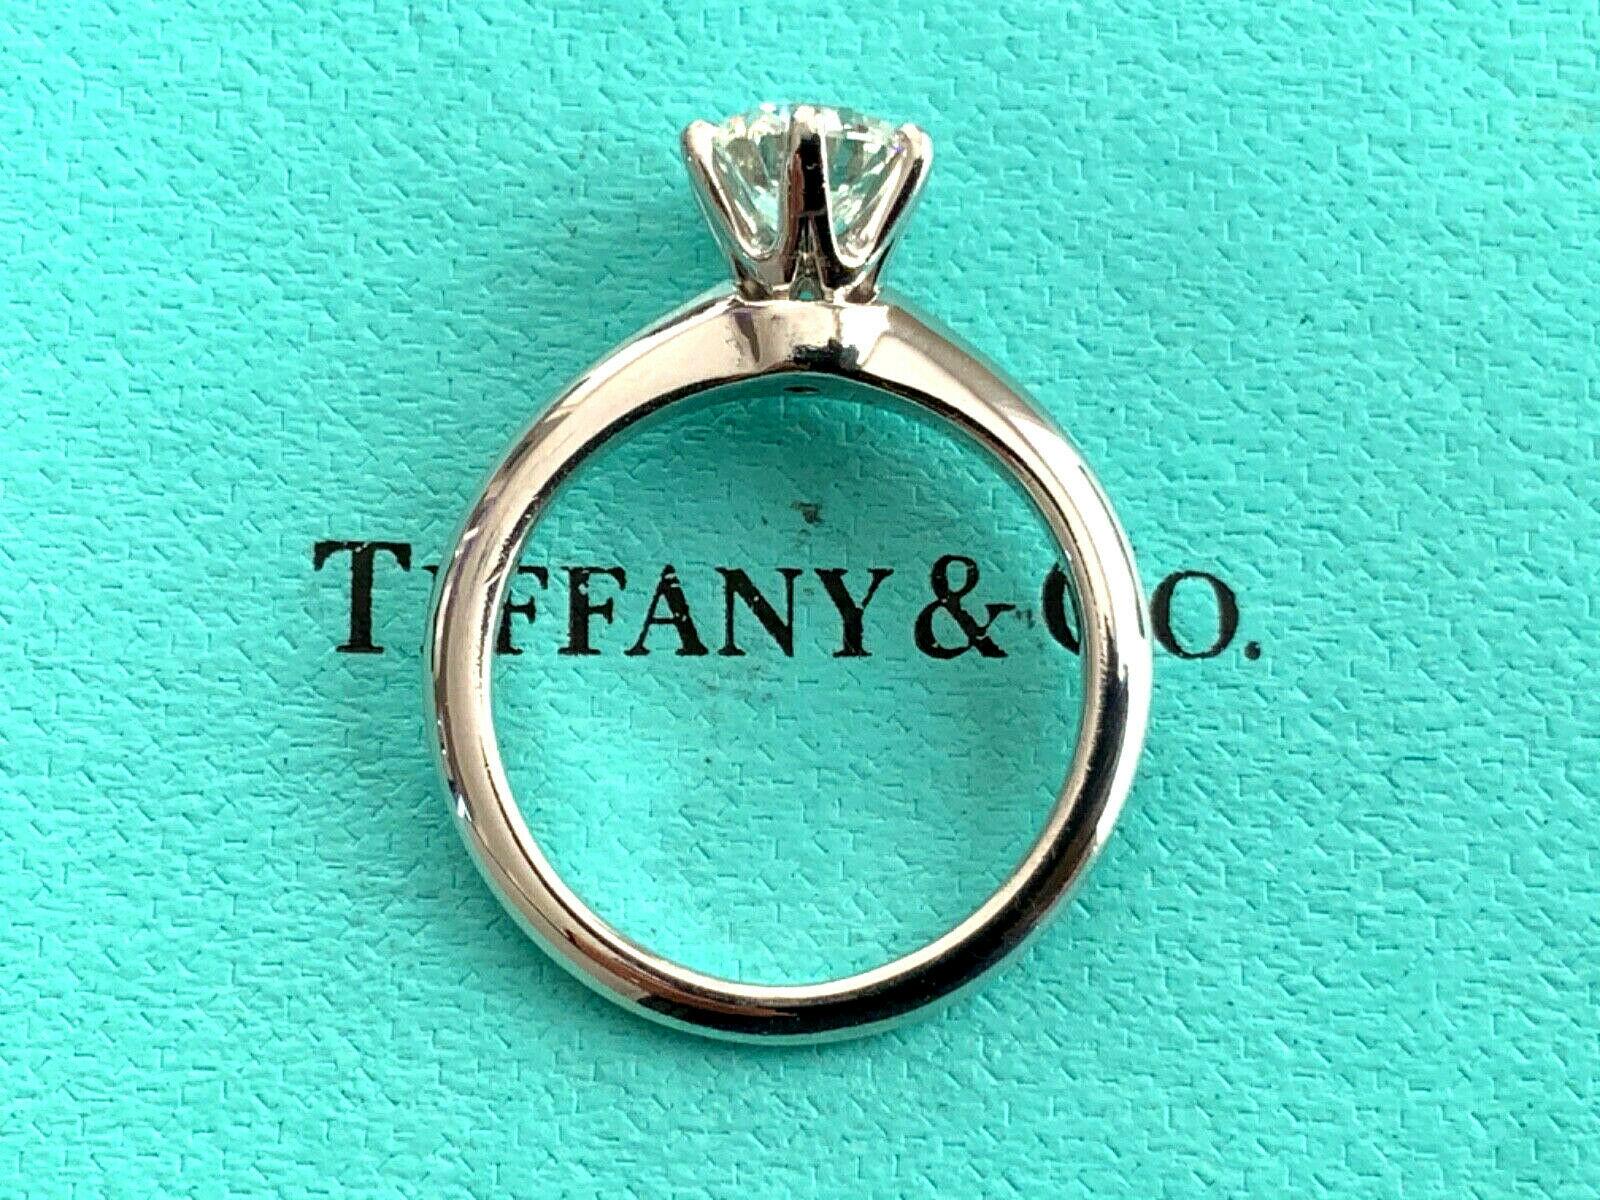 Tiffany & Co. Platinum Diamond .91 Carat Round Ring H VVS1 Triple Excellent Cut For Sale 6